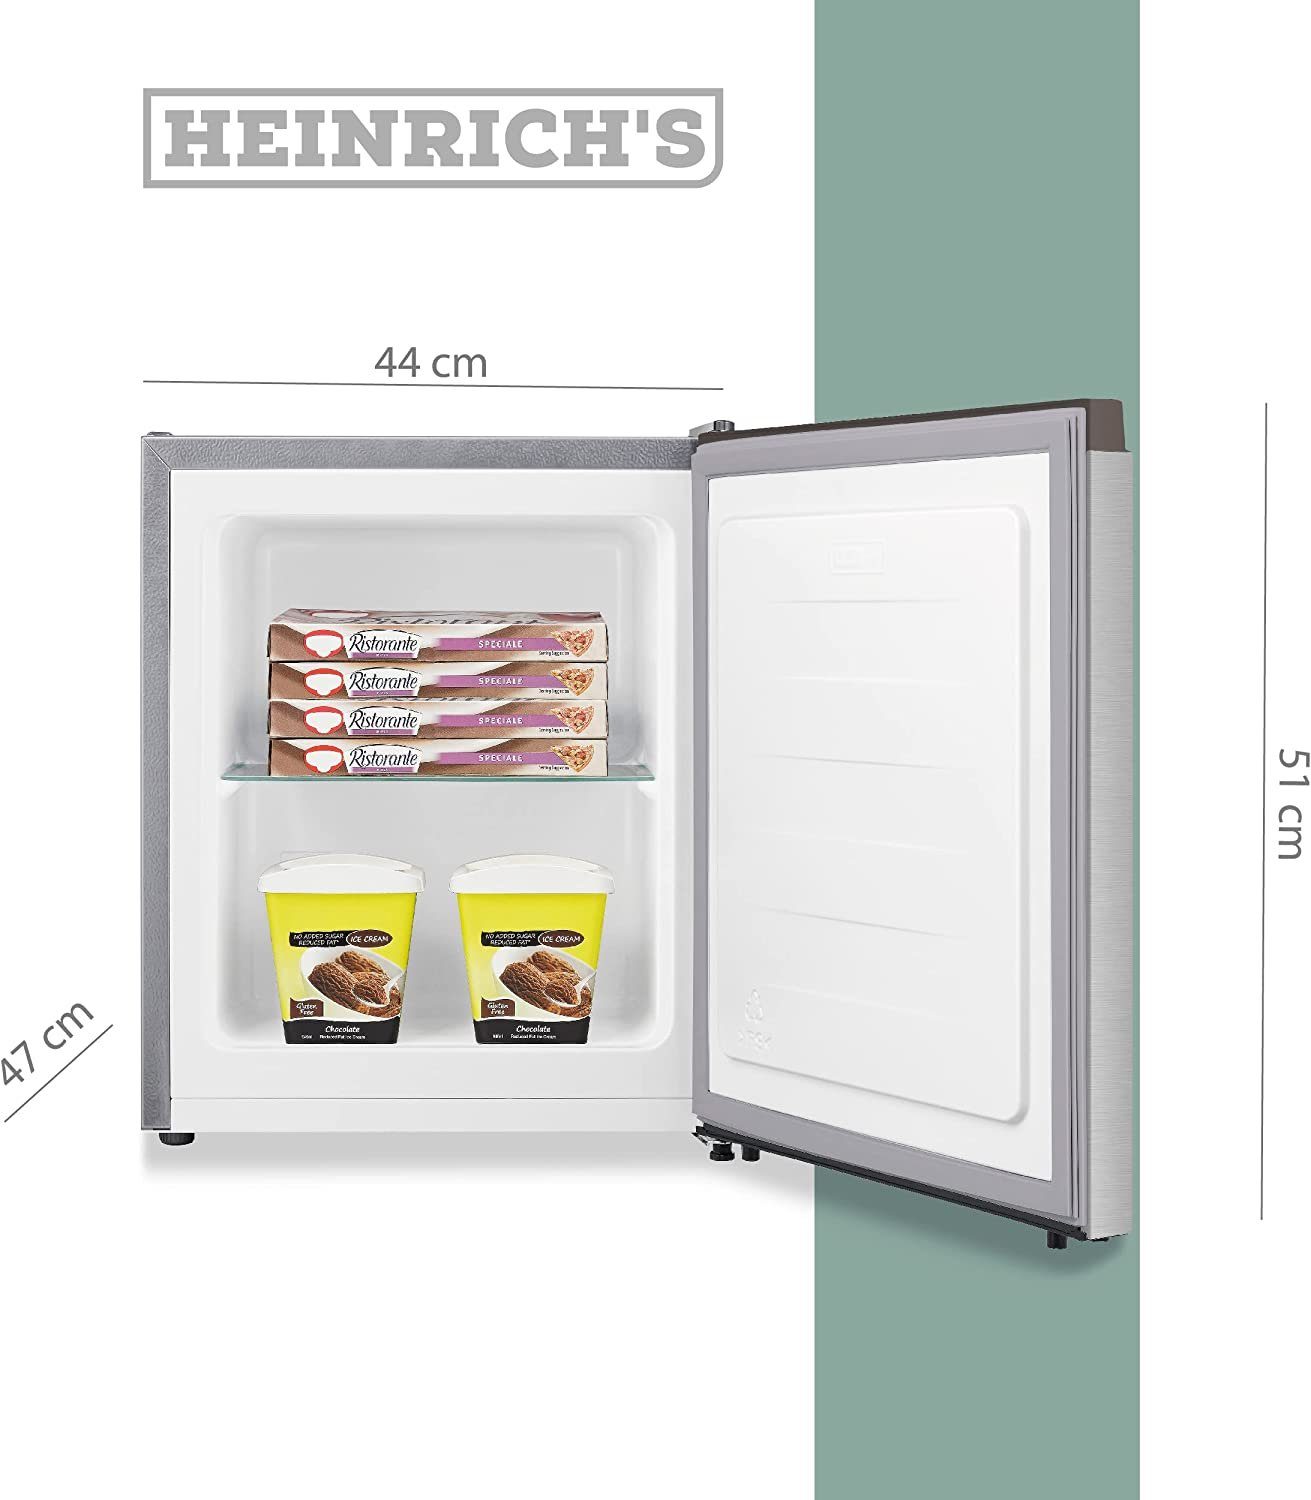 Mini 4088, Freezer Tiefkühlen cm HGB Gefrierbox, 44 breit, cm Heinrich´s Freezer 39db, 51 34L hoch, Edelstahl perfekt Gefrierschrank